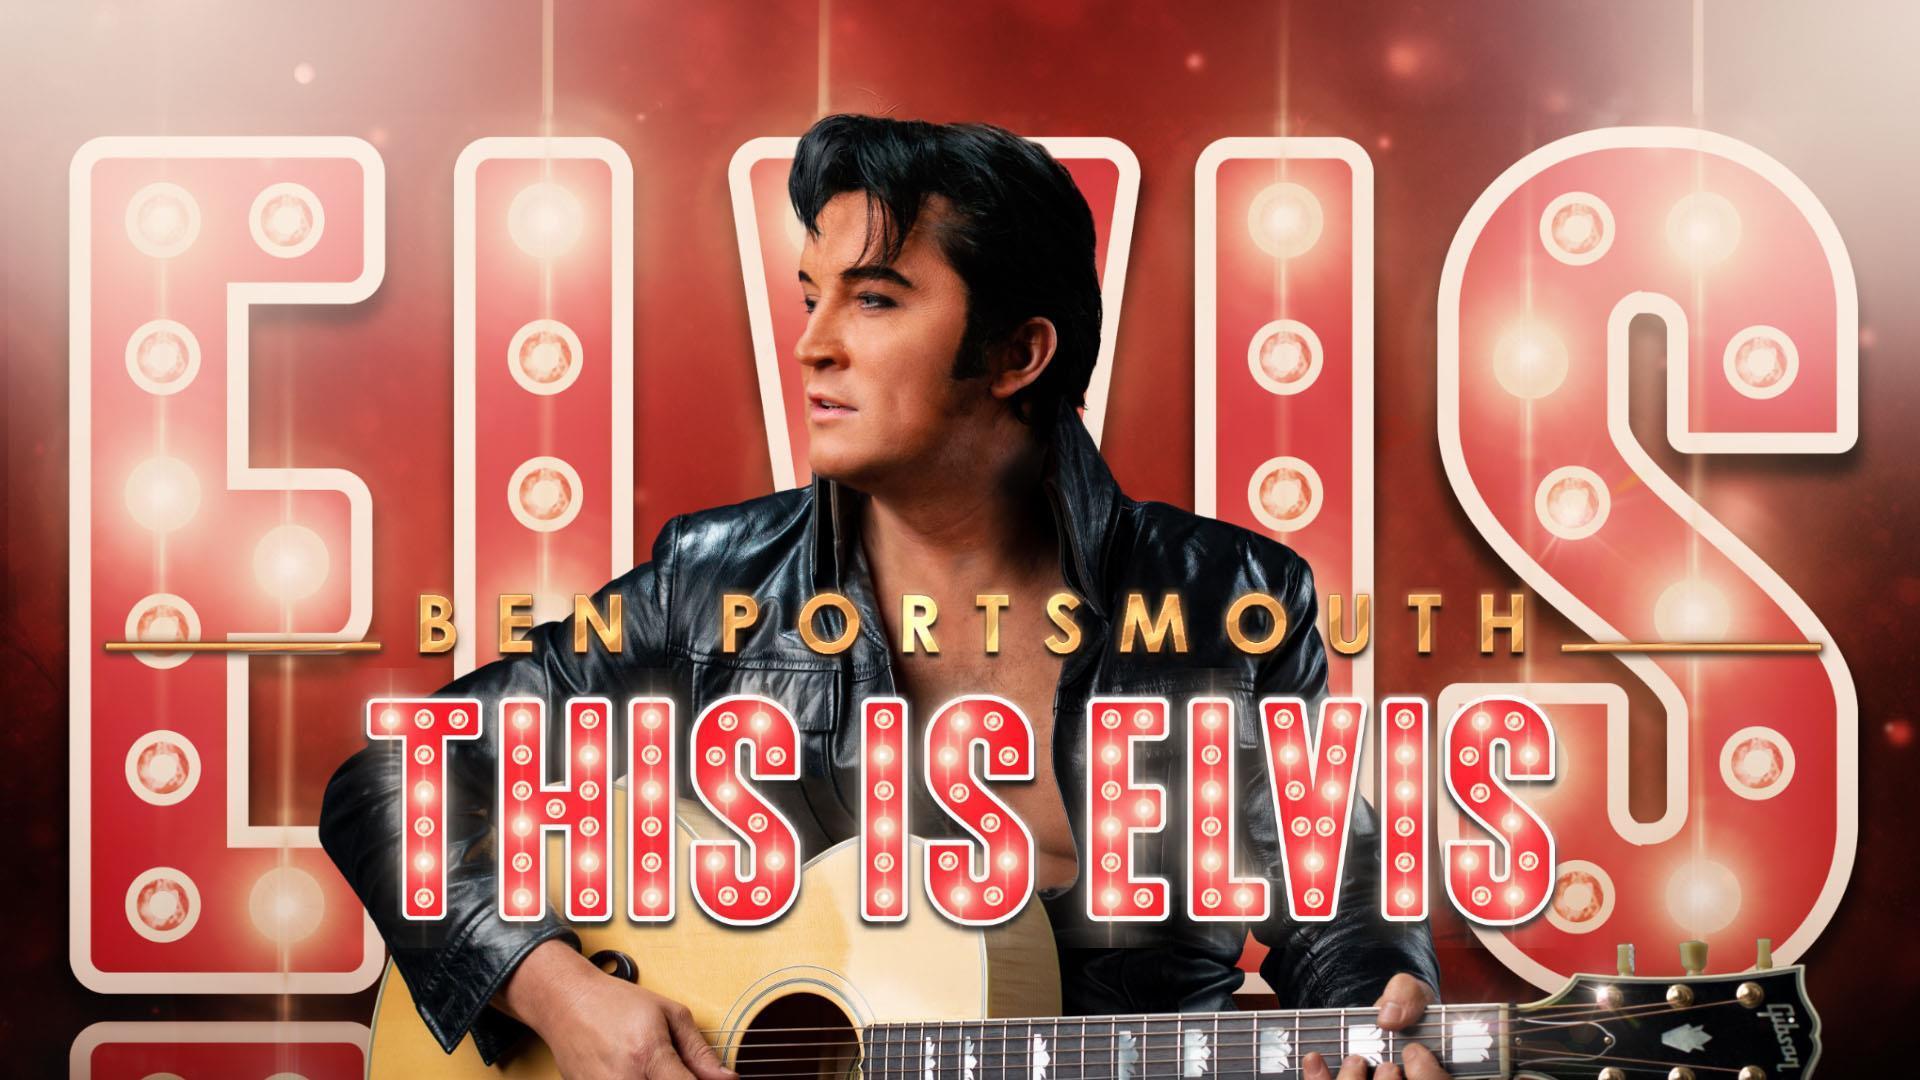 Ben Portsmouth: This is Elvis 